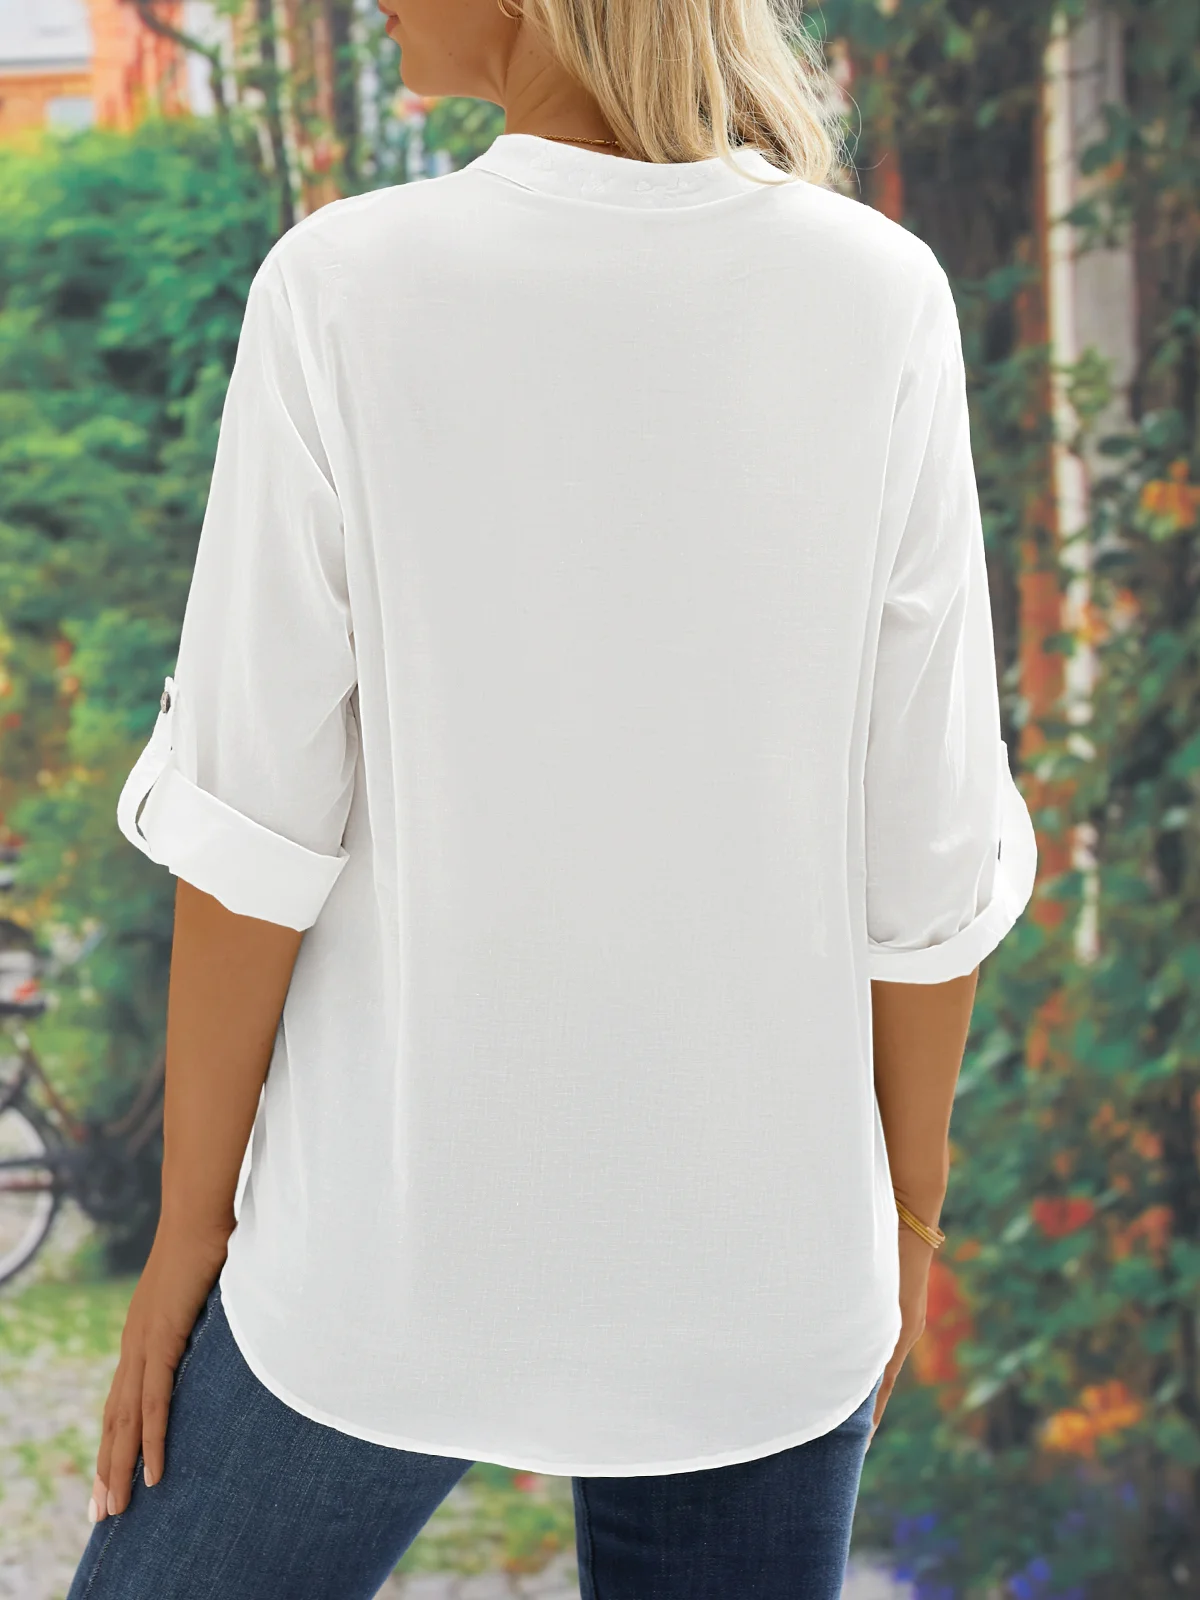 JFN Cotton Lace Stitching Long Sleeve Shirt